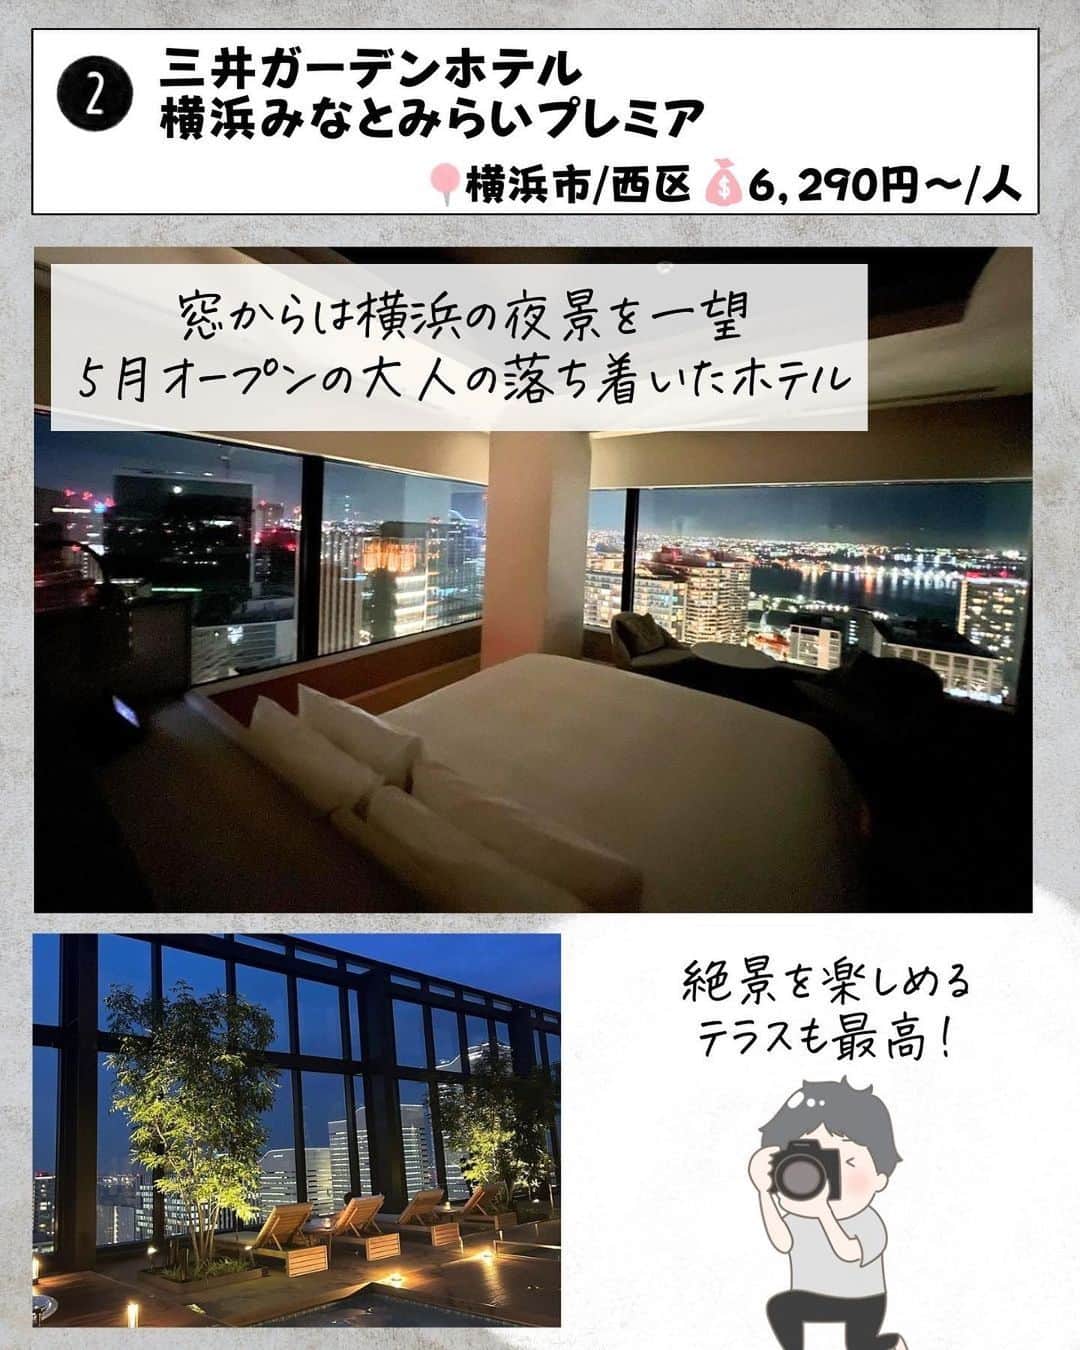 ぴち家さんのインスタグラム写真 - (ぴち家Instagram)「. お得を極めて旅に生きる夫婦、 ぴち家（@travelife_couple）です。 ⁡ 今回は「横浜デートでいきたい推し宿　7選」の特集です。  おしゃれなデートの定番スポット「横浜」✨ 横浜は「夜景がきれいなホテル」でも有名ですよね✨😊  中華街でおいしいランチを食べたら 夜は最高の夜景が見れるホテルに宿泊！ 忘れられない記念日になること間違いなし！！  特別な日には横浜デートオススメだよ～😊👍🏻 ⁡ ※ホテル価格は楽天トラベルで検索した最安値を記載しています。 時期により変動があるため参考程度としてください！ ⁡ 【𝕚𝕟𝕗𝕠𝕣𝕞𝕒𝕥𝕚𝕠𝕟𓏗𓏗】 ❶ オークウッドスイーツ横浜 📍神奈川県横浜市中区北仲通5-57-2 （写真:@mana__00210様より）  ❷ 三井ガーデンホテル横浜みなとみらいプレミア 📍神奈川県横浜市西区みなとみらい3-3-3 ⁡（写真:@juno.36様　@__ay.01_様より）  ❸ ザ・スクエアホテル横浜みなとみらい 📍神奈川県横浜市西区みなとみらい6-3-4 （写真:n_a_o1021様より）  ❹ シタディーンハーバーフロント横浜 📍神奈川県横浜市中区日本大通5-2 ⁡（写真:@travel_kanagawa_japan様　@ampm_456様より）  ➎ ホテル エディット 横濱 📍神奈川県横浜市中区住吉町六丁目78番地1 （写真:@eriii24krt様　@nao_coccochi様より）  ❻ ホテルアソシア新横浜 📍神奈川県横浜市港北区新横浜2-100-45 ⁡（写真:@chikosan_happyflowers様より）  ➐ ホテルプラム（HOTEL PLUMM）横浜 📍神奈川県横浜市西区北幸2-9-1 （写真:@moorie222824様より）  ーーーーーーーーーーーーーーーーーー✽ ⁡ ぴち家（@travelife_couple）って？ ⁡ バン🚐で旅してホテルやスポット巡り！ お得旅行が大好きな夫婦です。 ⁡ ✔︎旅行先やホテル ✔︎観光スポット・グルメまとめ ✔︎旅費を作るためのお金の話を発信中𓂃𓈒𓏸 ⁡ ⁡ また本アカウント以外にも、以下を運営しております。 少しでも役立ちそう、応援してもいいと思って 頂ける方はフォローよろしくお願いしますˎˊ˗ ⁡ 📷日常・写真メインの旅行情報 →@travelife_diary （フォロワー4万超） ⁡ 🔰初心者必見のお金・投資情報 →@yuki_moneylife （フォロワー11万超） ⁡ 🎥旅行ムービー発信のTiktok → @ぴち家（フォロワー2.5万超） ⁡ 【テーマ】 「旅行をもっと身近に✈️」 これまで厳しい状況が続いてきた旅行・飲食業界を盛り上げたい！ より多くの人にワクワクする旅行先を知って もらえるよう、またお得に旅行が出来るよう、 夫婦二人で発信を頑張っています。 　 【お願い】 応援して頂けるフォロワーの皆様、及び 取材させて頂いている企業様にはいつも感謝しております！🙇‍♂️🙇‍♀️ お仕事依頼も承っておりますので、 応援頂ける企業・自治体様はぜひ プロフィールのお問合せよりご連絡お願いします。 ⁡ ぴち家(@travelife_couple) ⁡ ✽ーーーーーーーーーーーーーーーーー ⁡ #オークウッドスイーツ横浜 #三井ガーデンホテル横浜みなとみらいプレミア #ザスクエアホテル横浜みなとみらい #シタディーンハーバーフロント横浜 #ホテルエディット横濱 #ホテルアソシア新横浜 #ホテルプラム横浜 #ぴちホテルまとめ」9月14日 20時00分 - travelife_couple